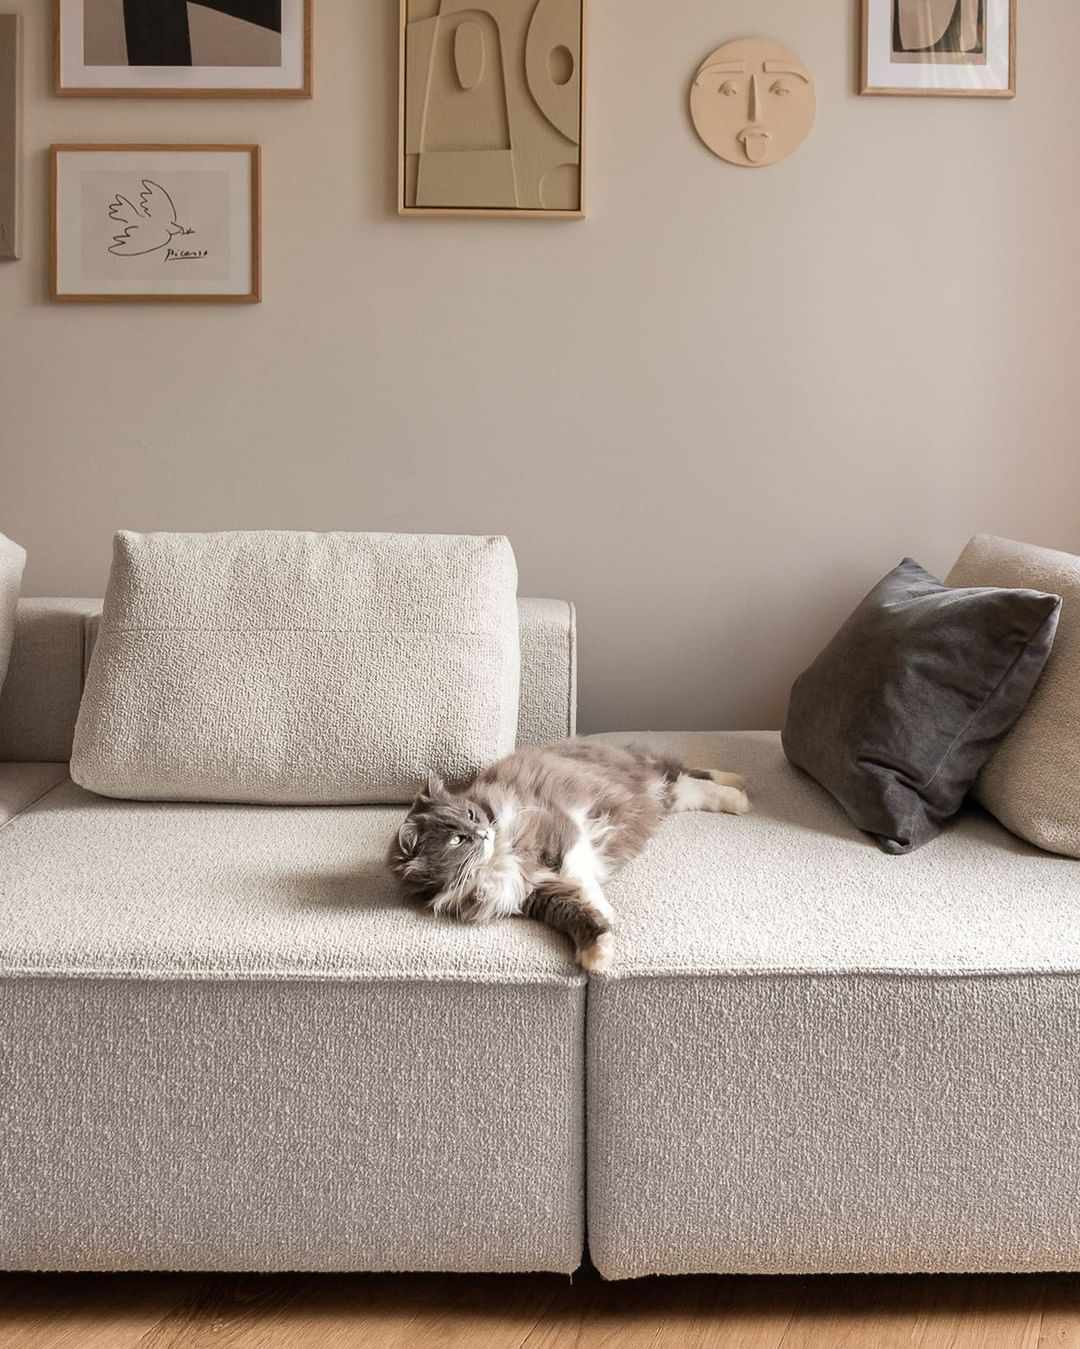 Boucle-Sofa mit Katze darauf